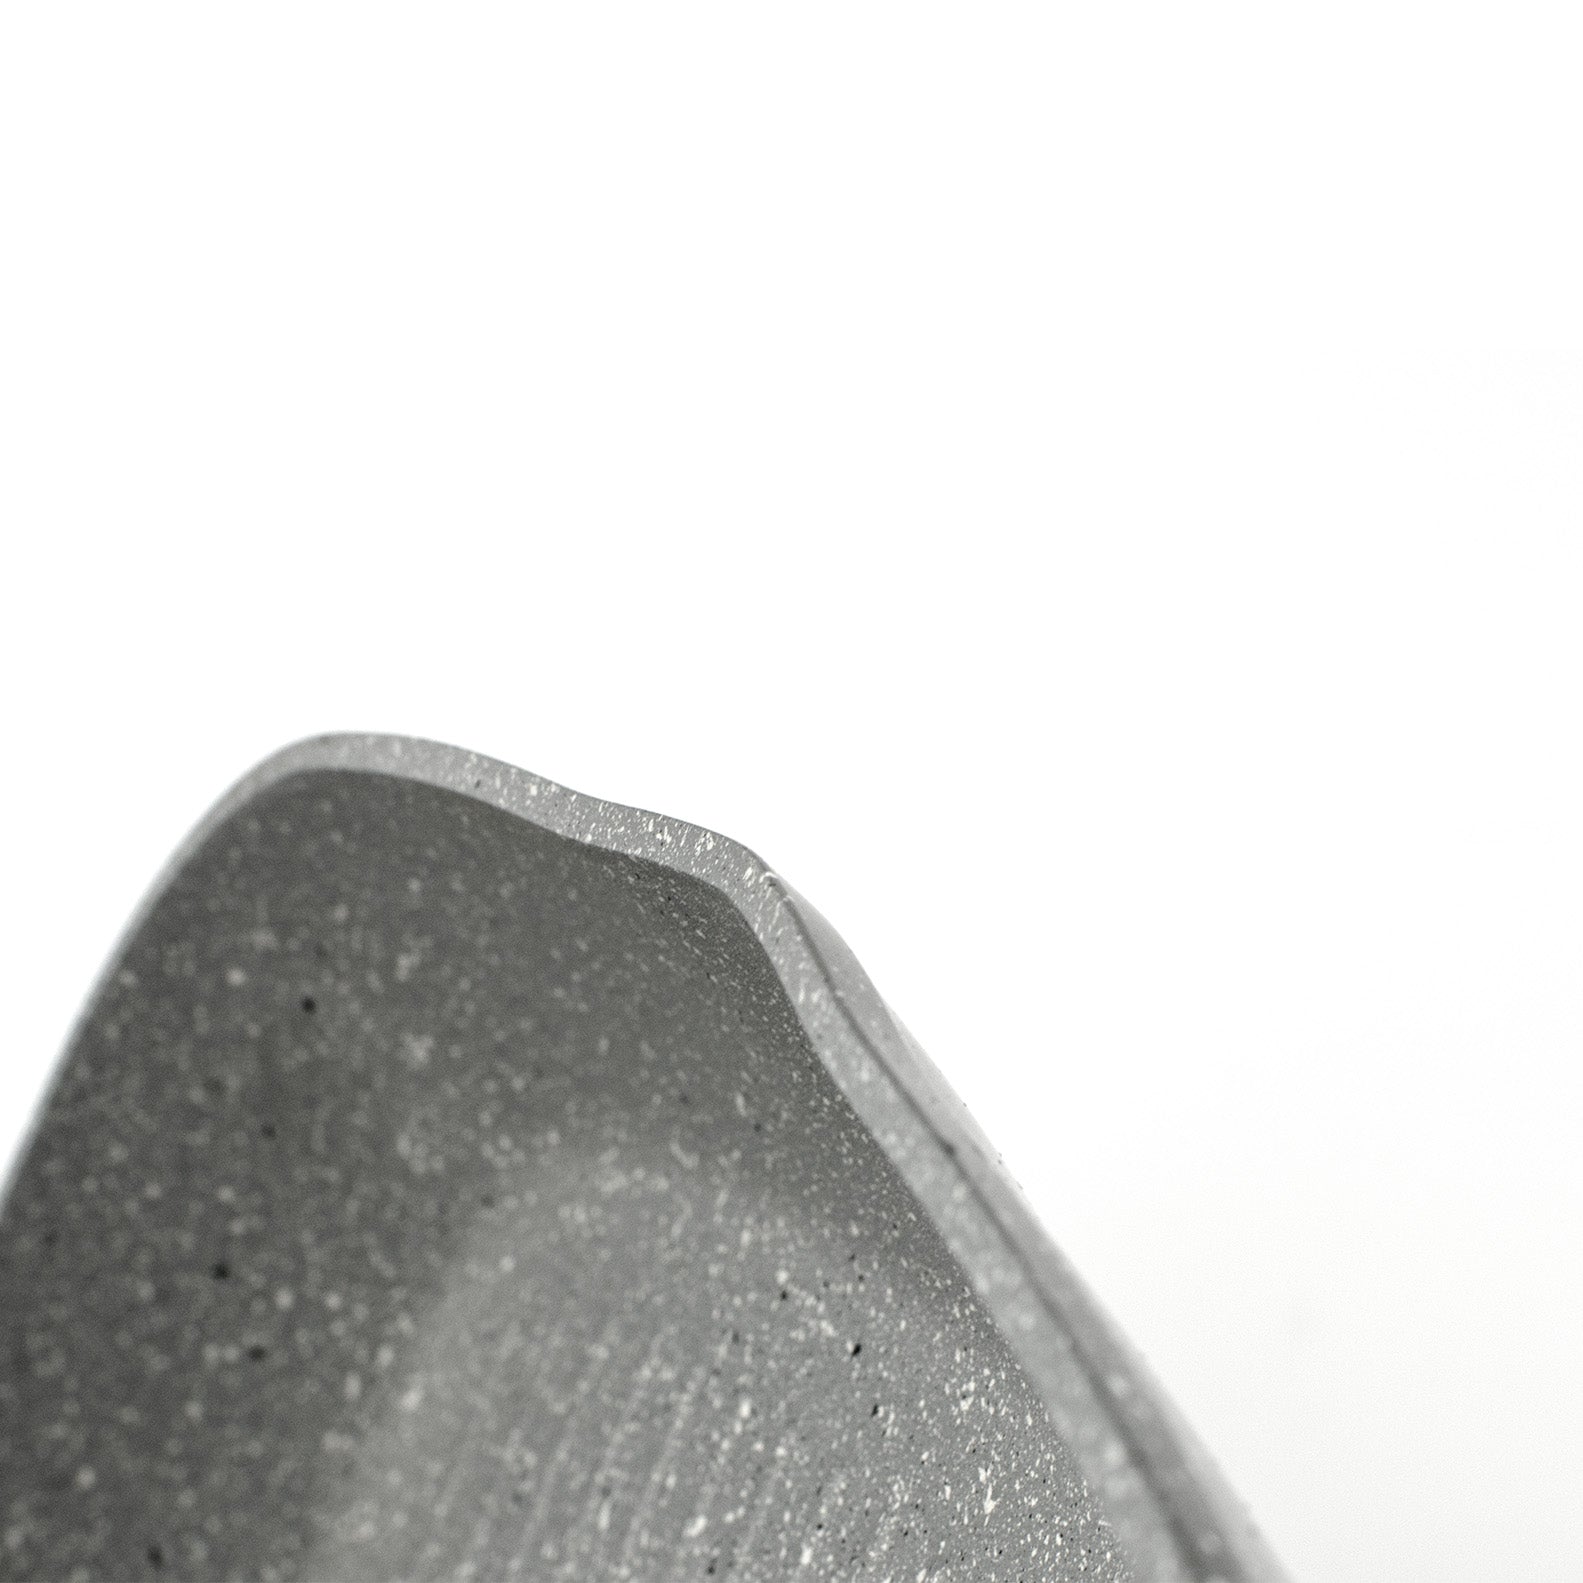 VeraPetra Antihaft-Grillpfanne für Induktionsplatten – 28 x 28 cm